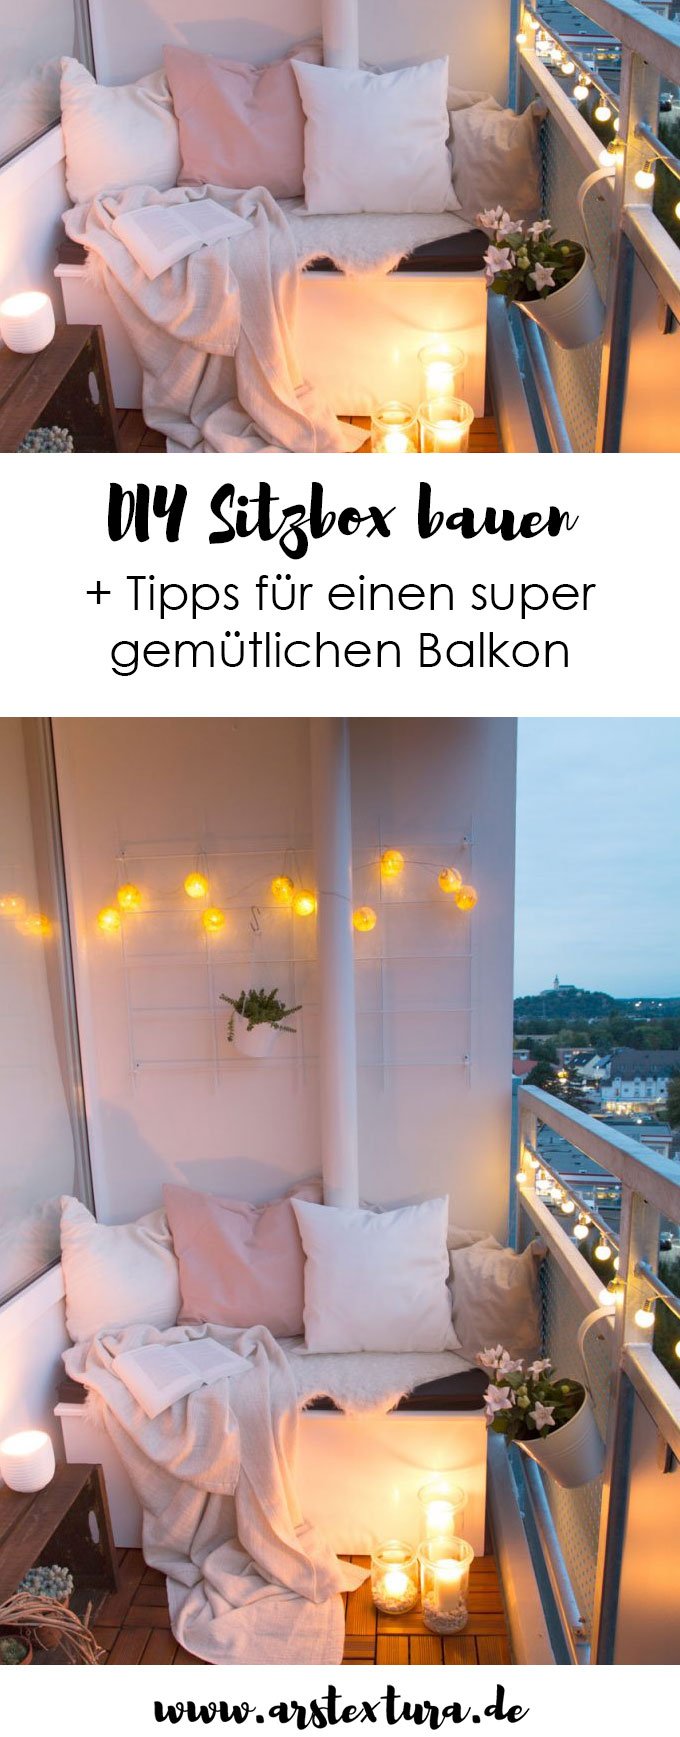 5 Tipps für einen gemütlichen Balkon und eine DIY Sitzbox - so schaffst du Ordnung auf deinem kleinen Balkon und machst ihn zu deinem Lieblingsplatz